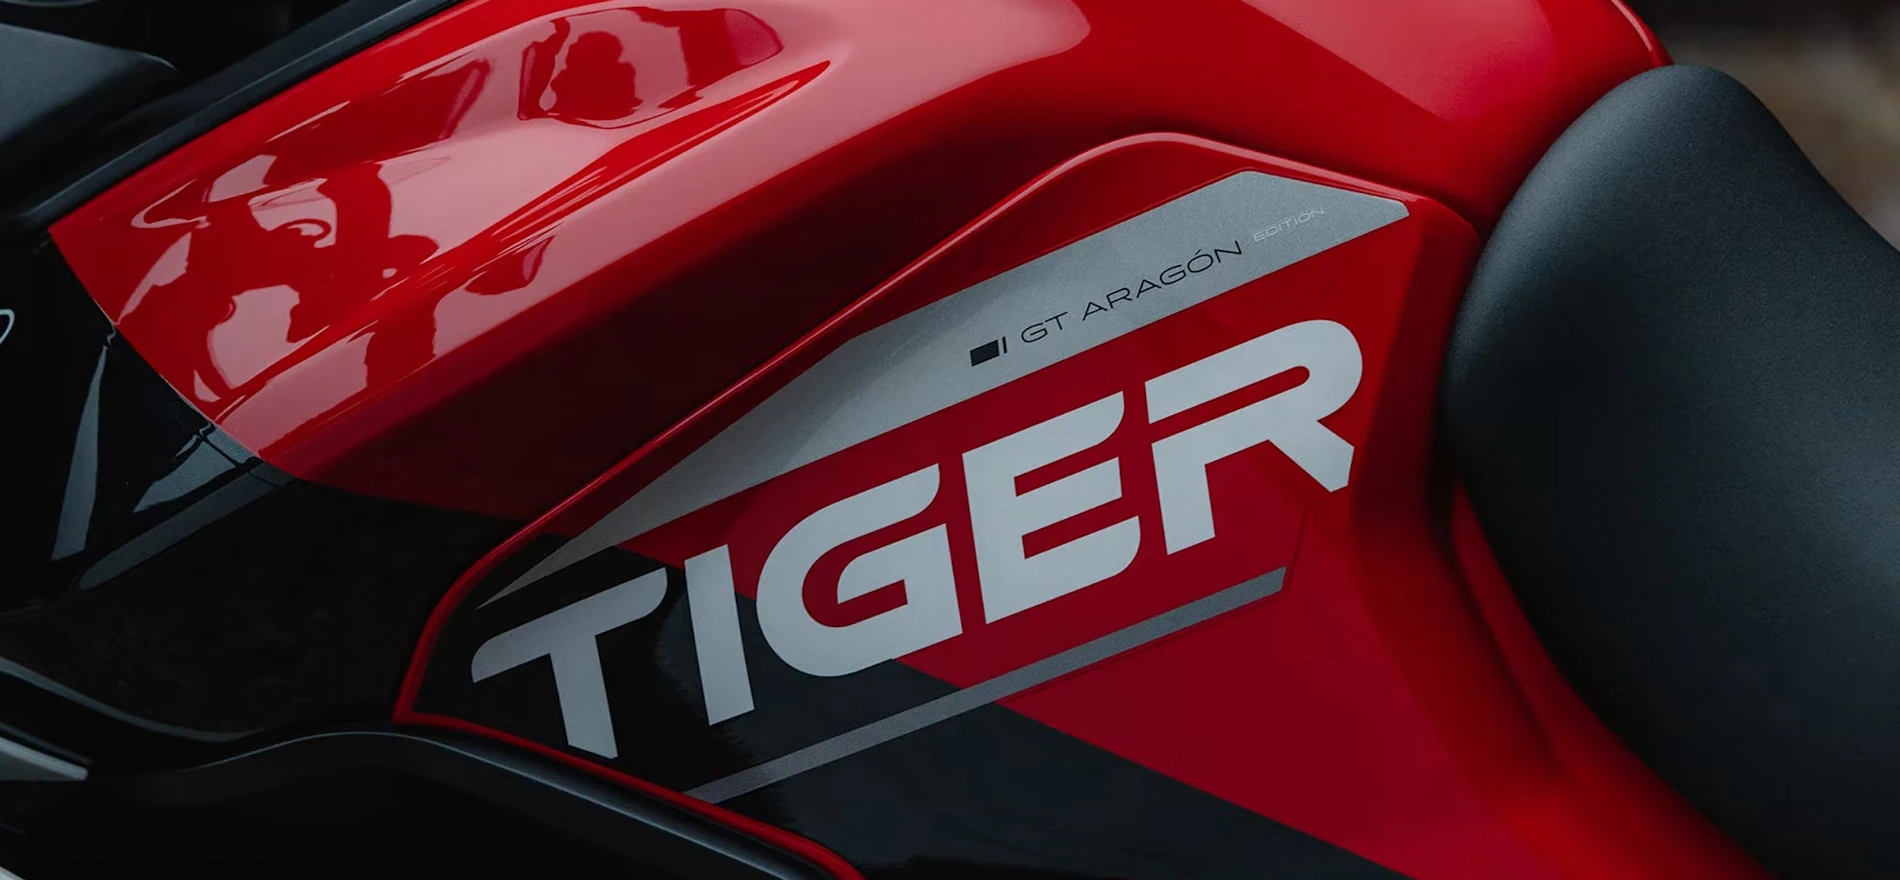 Tiger 900 GT Aragón Edition